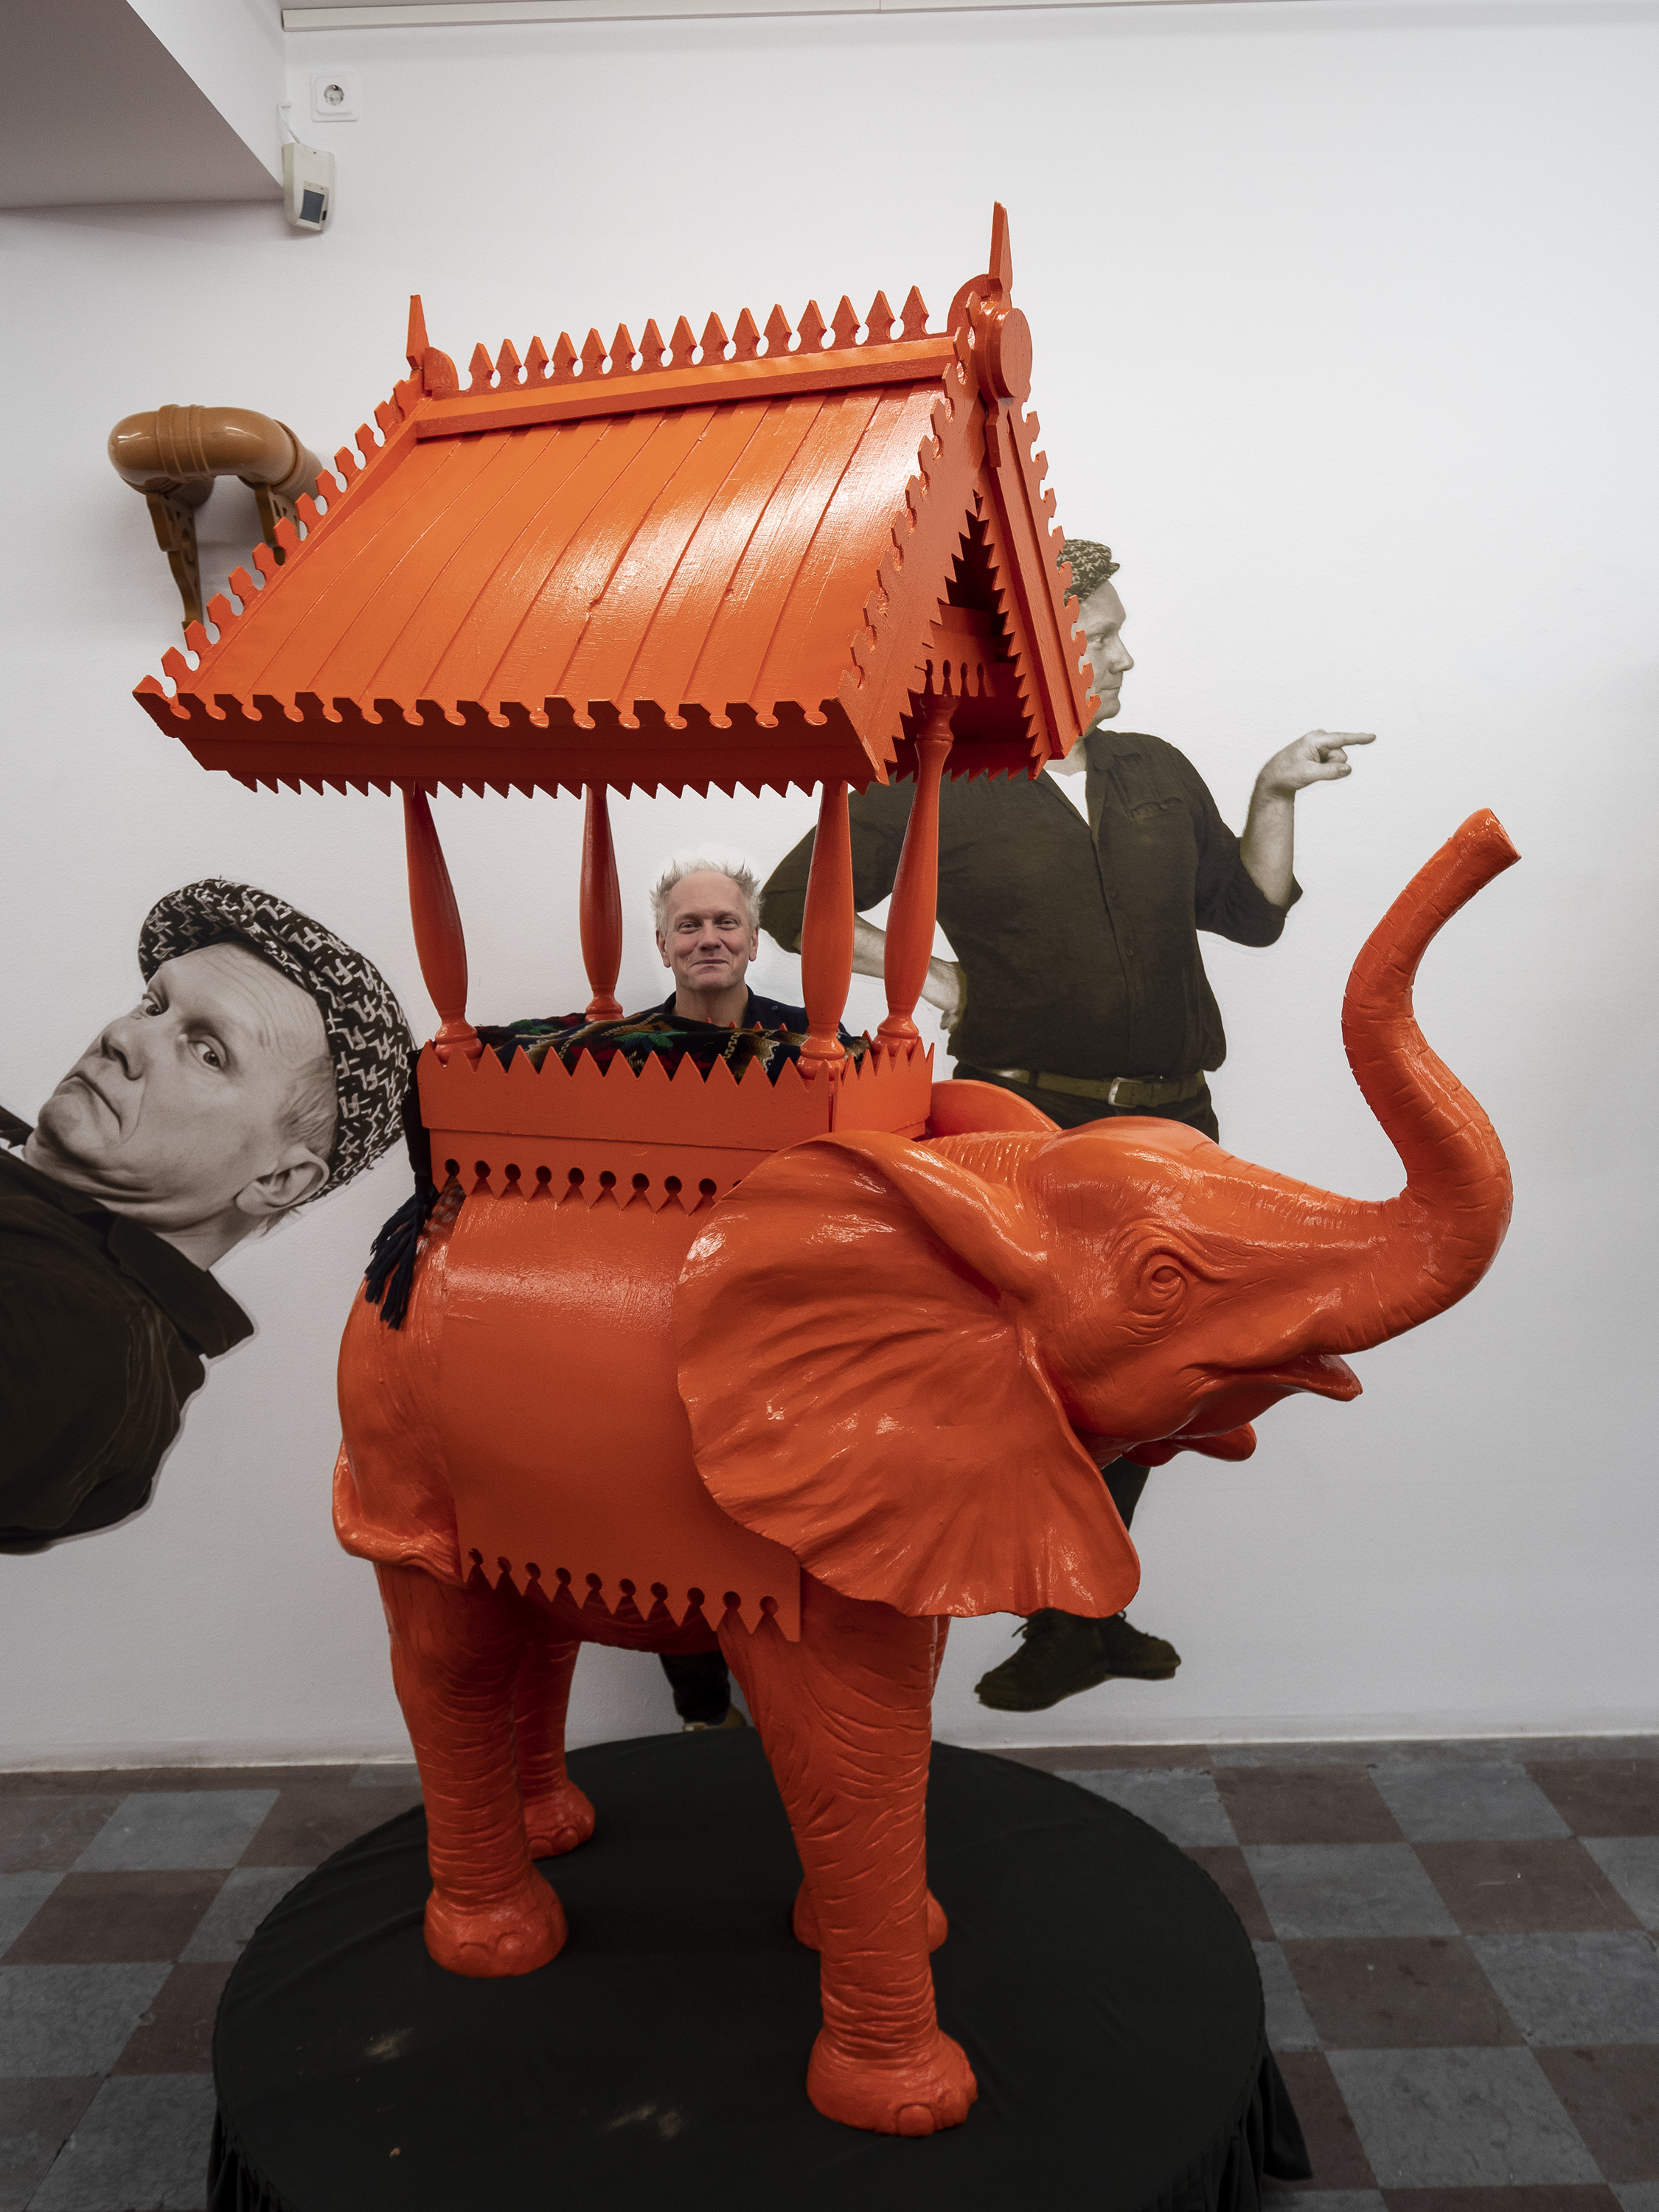 Konstnären Peter Johansson med Elefanten i rummet i samband med utställningen Souvenir på Wetterling Gallery i Stockholm.